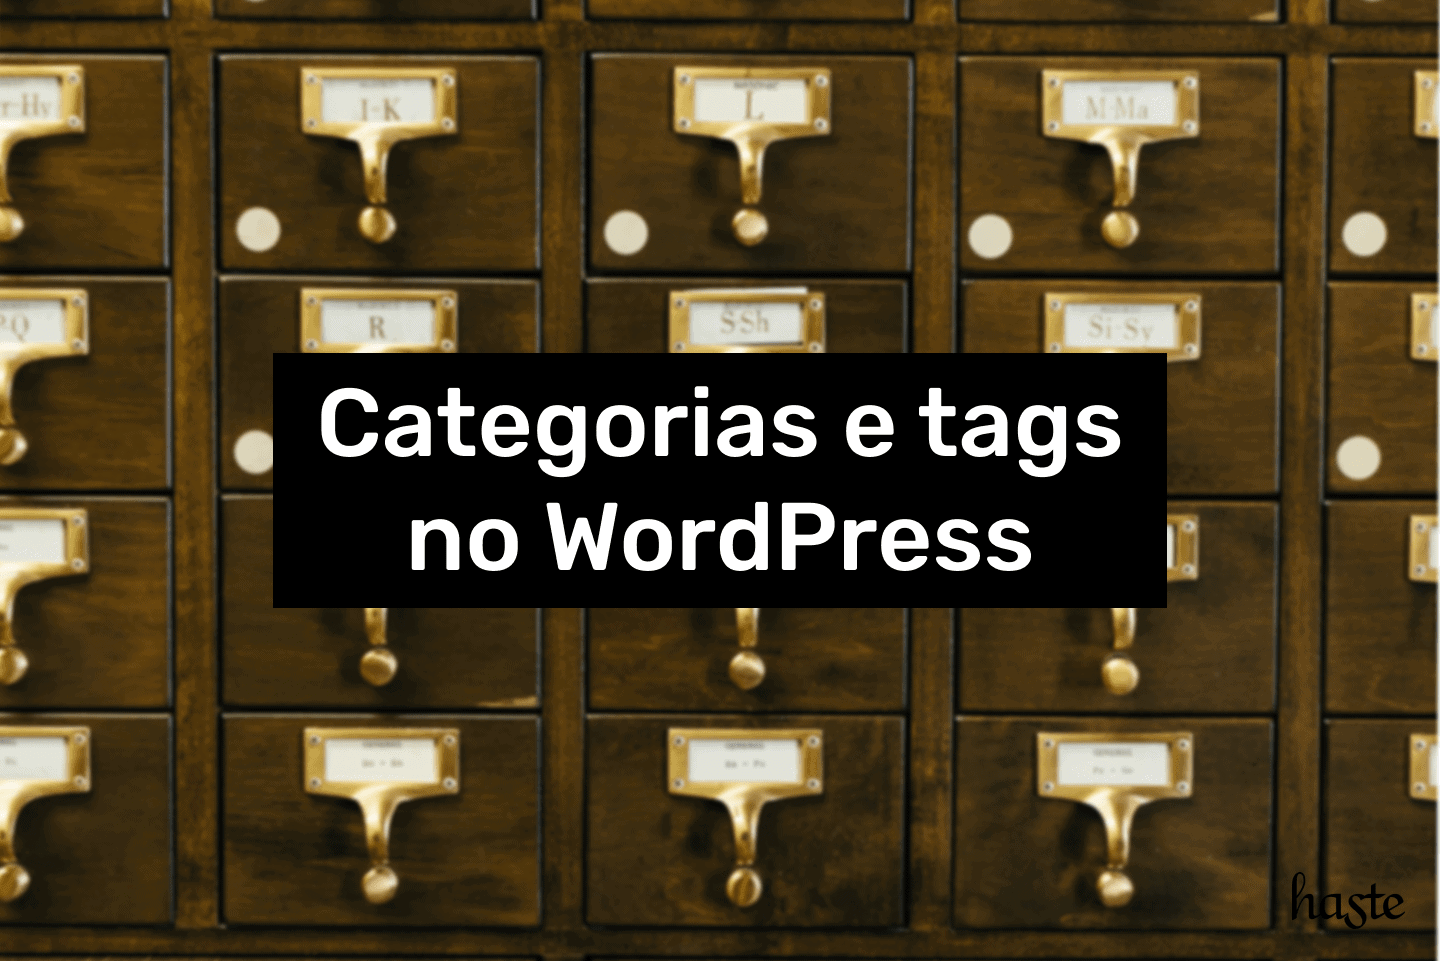 Categorias e tags no WordPress. Imagem ilustrativa.